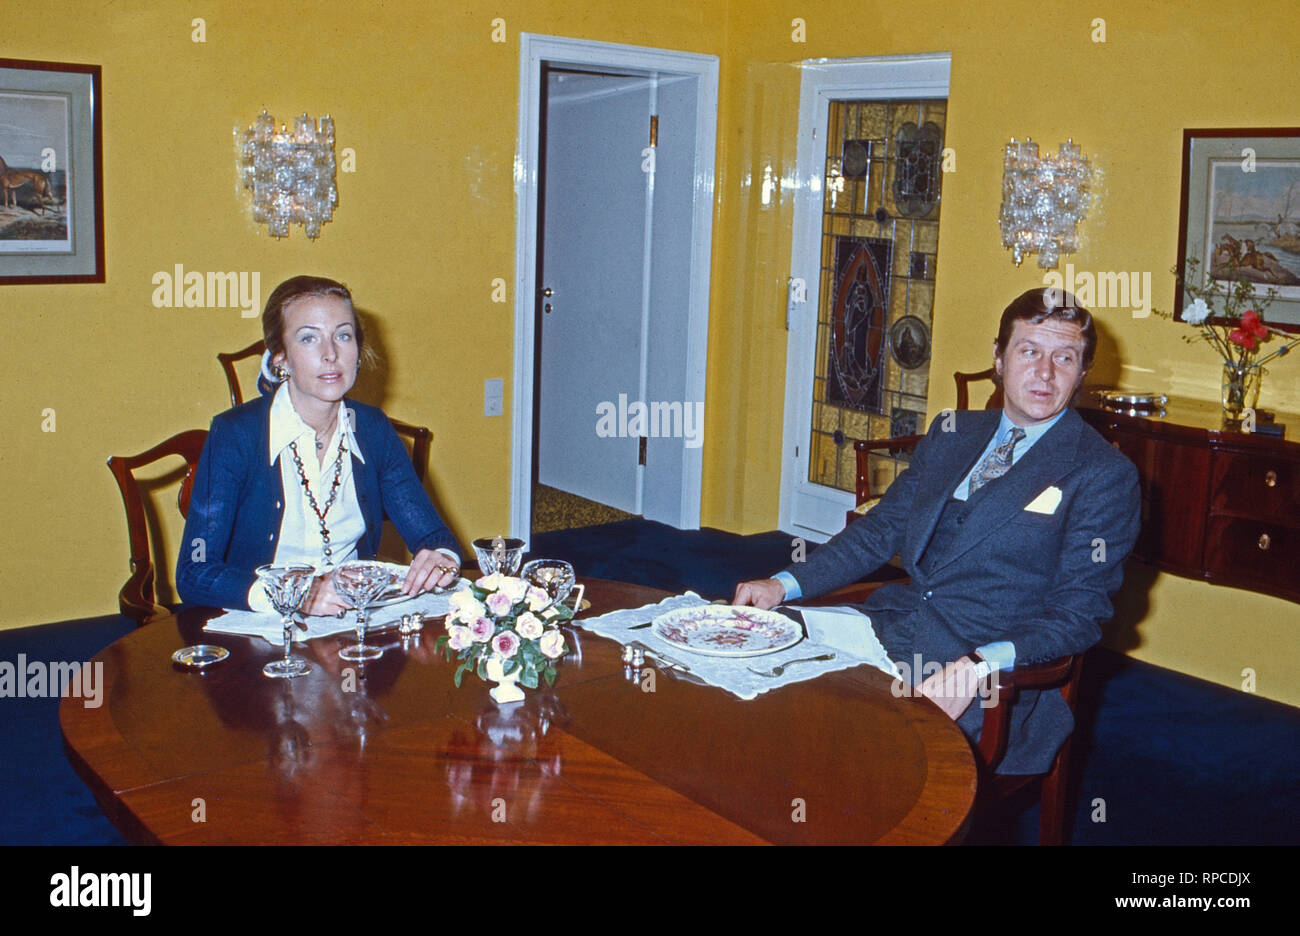 Albert Darboven mit Ehefrau Edda, Geb. Prinzessin von Anhalt en Hamburgo, Alemania 1975. Albert Darboven con su esposa Edda, nee Princesa von Anhalt, con sede en Hamburgo, Alemania 1975. Foto de stock